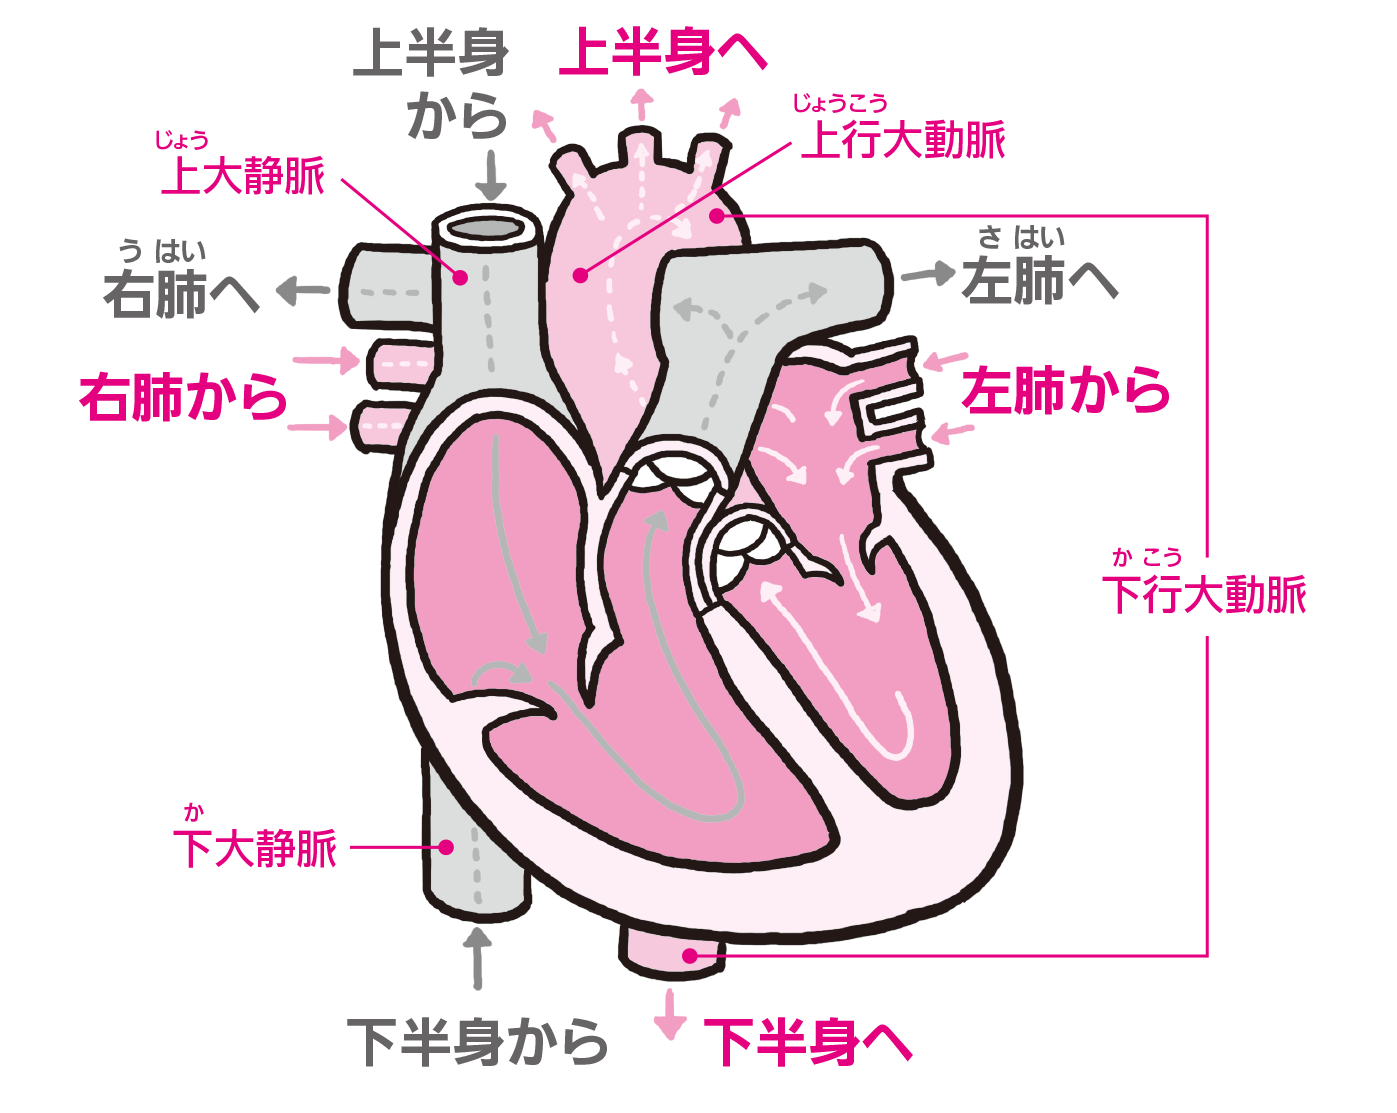 拍動は左胸に感じるから 心臓があるのも左胸 解剖学の話